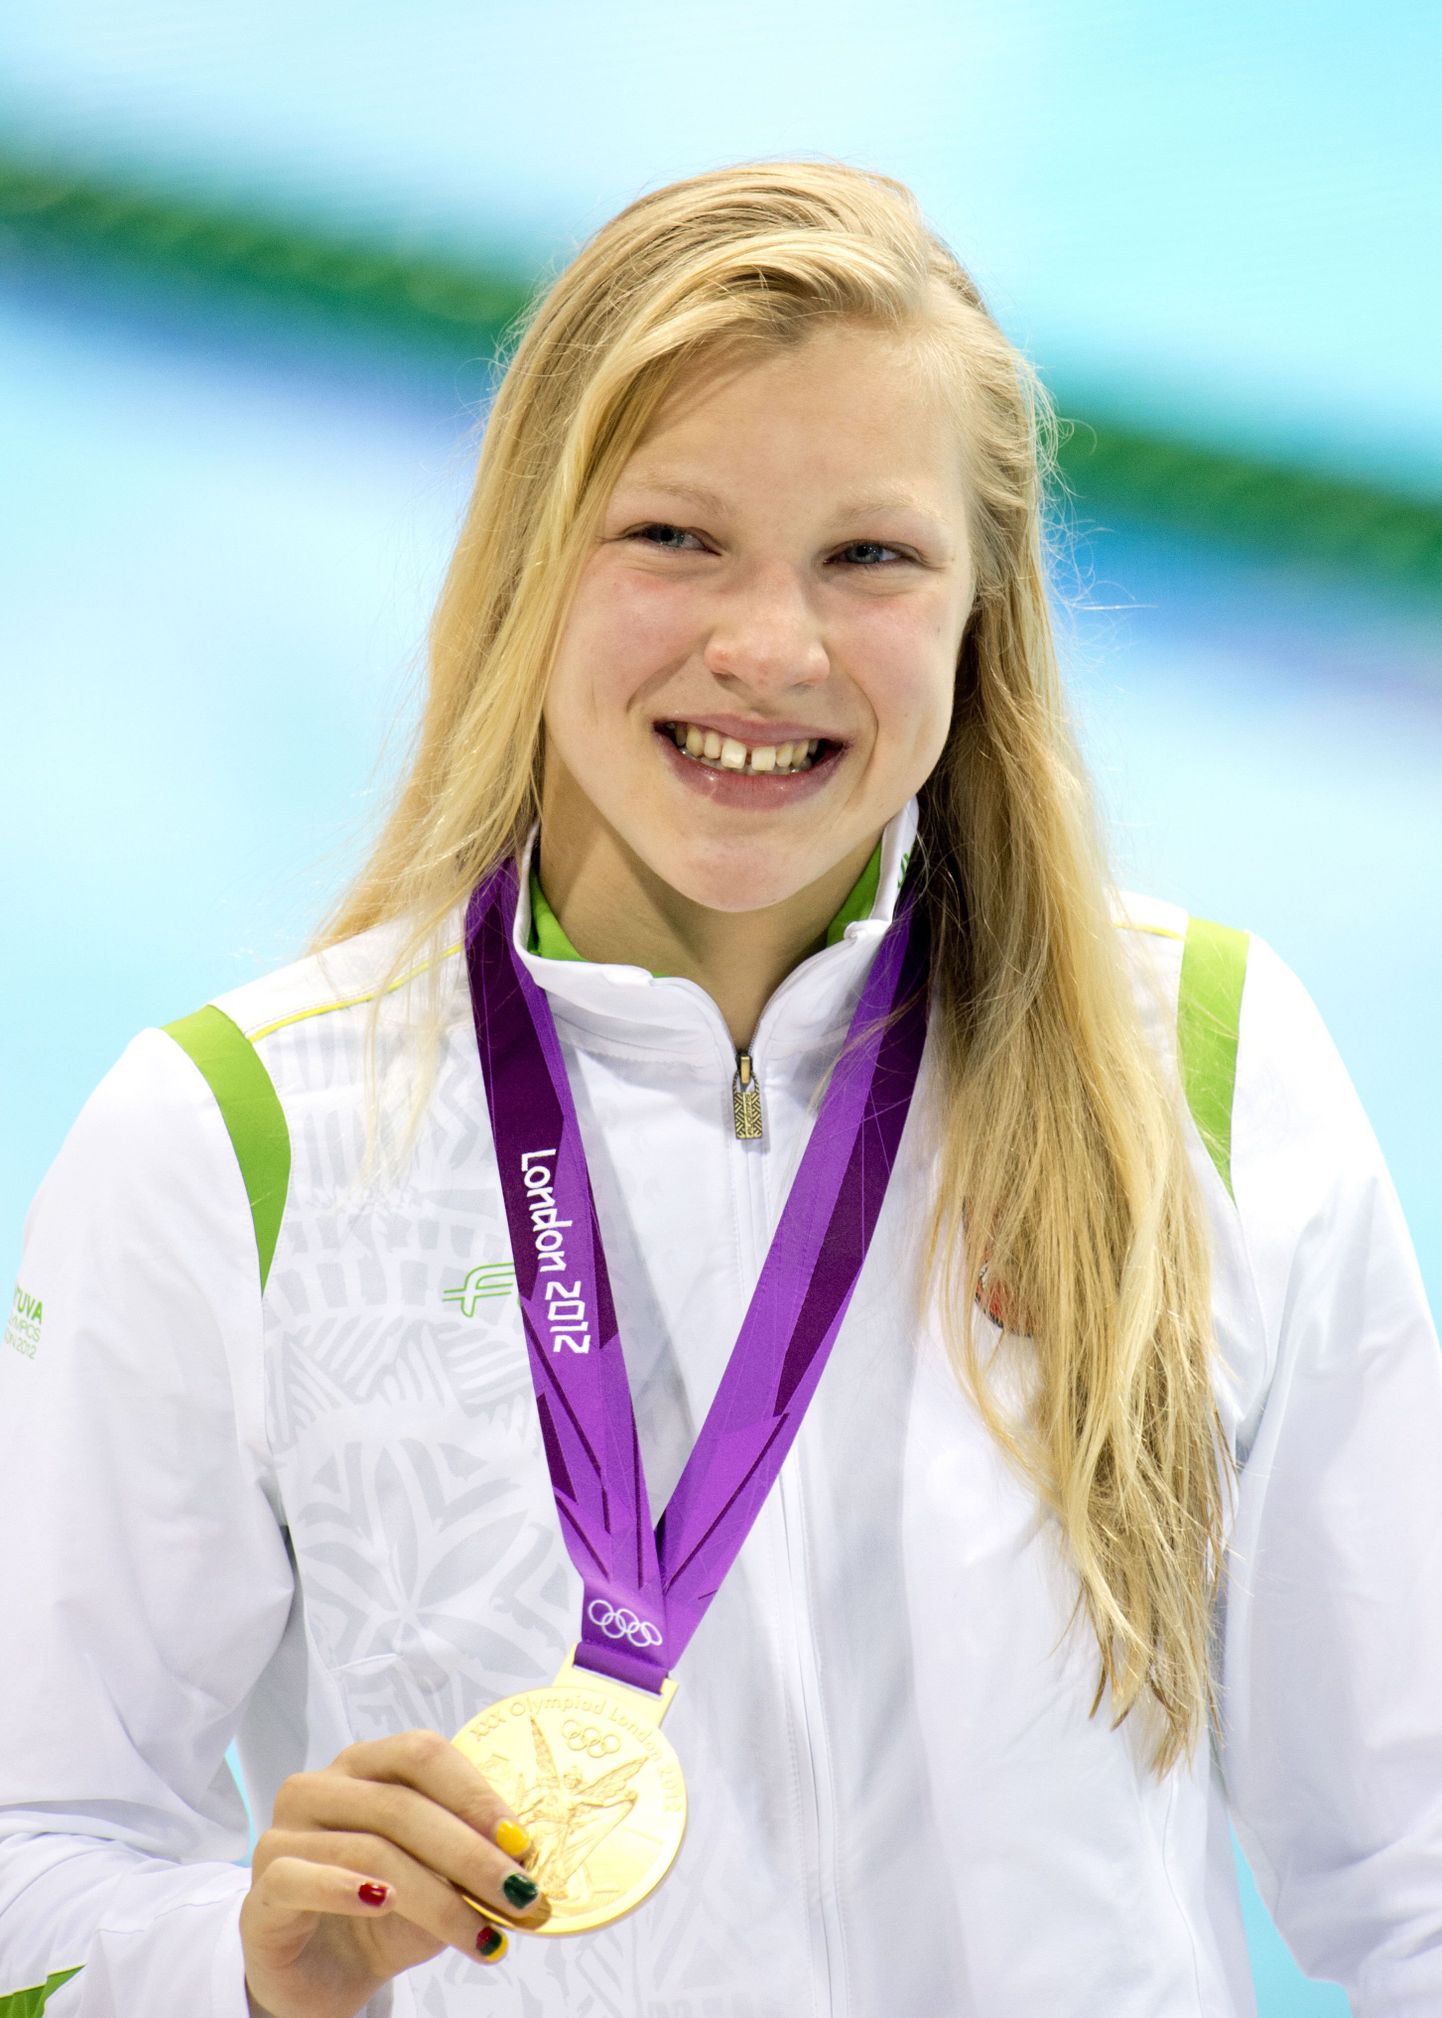 15-aastase Ruta Meilutyte triumf 100 m rinnuliujumises